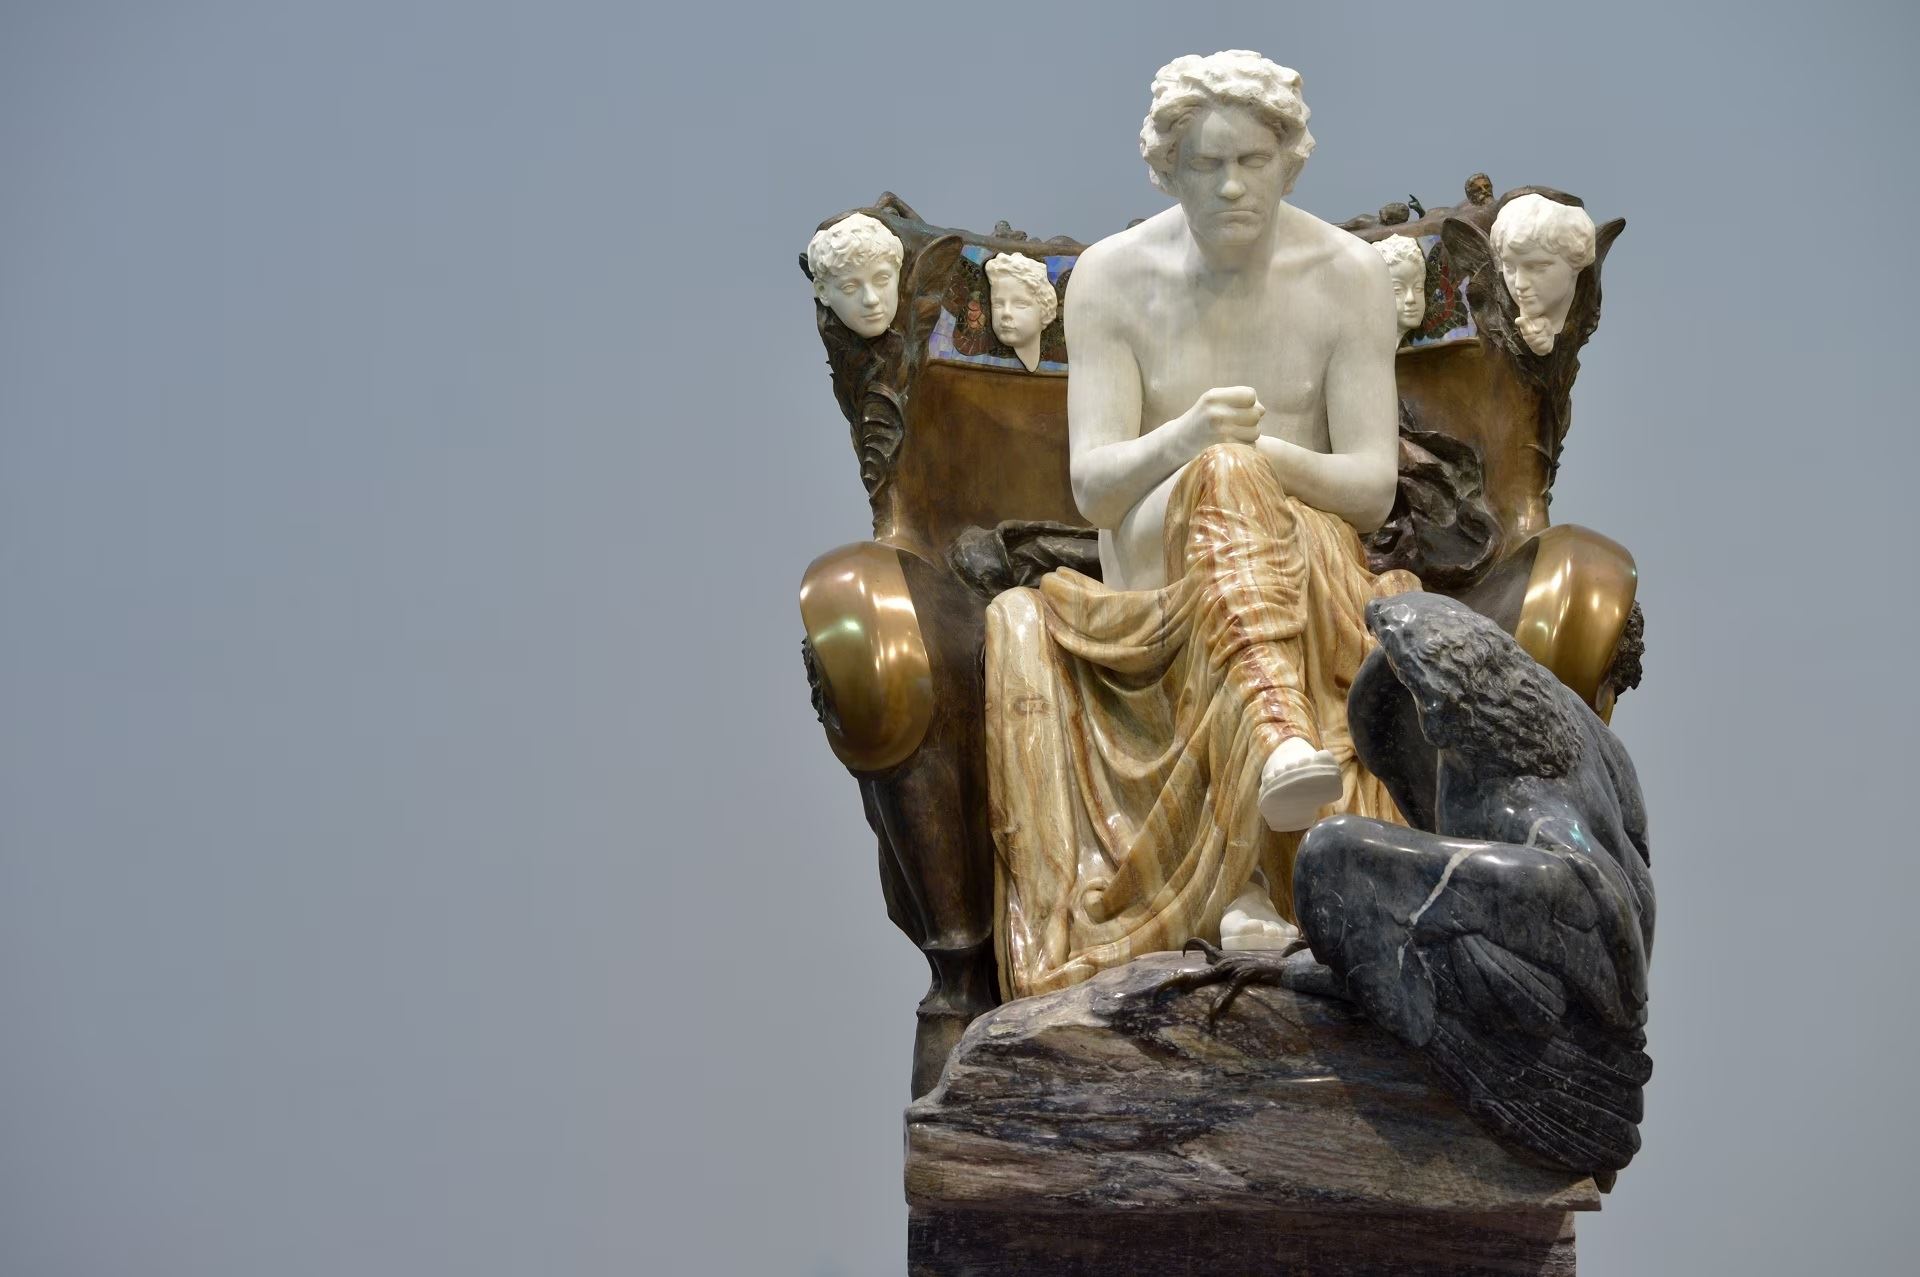 Max Klinger, “Monumento a Beethoven” (1902), realizzato con il fregio di Klimt per la mostra alla Secessione di Vienna, per i 250 della nascita del compositore. Nell’occasione Mahler diresse l’Inno alla Gioia